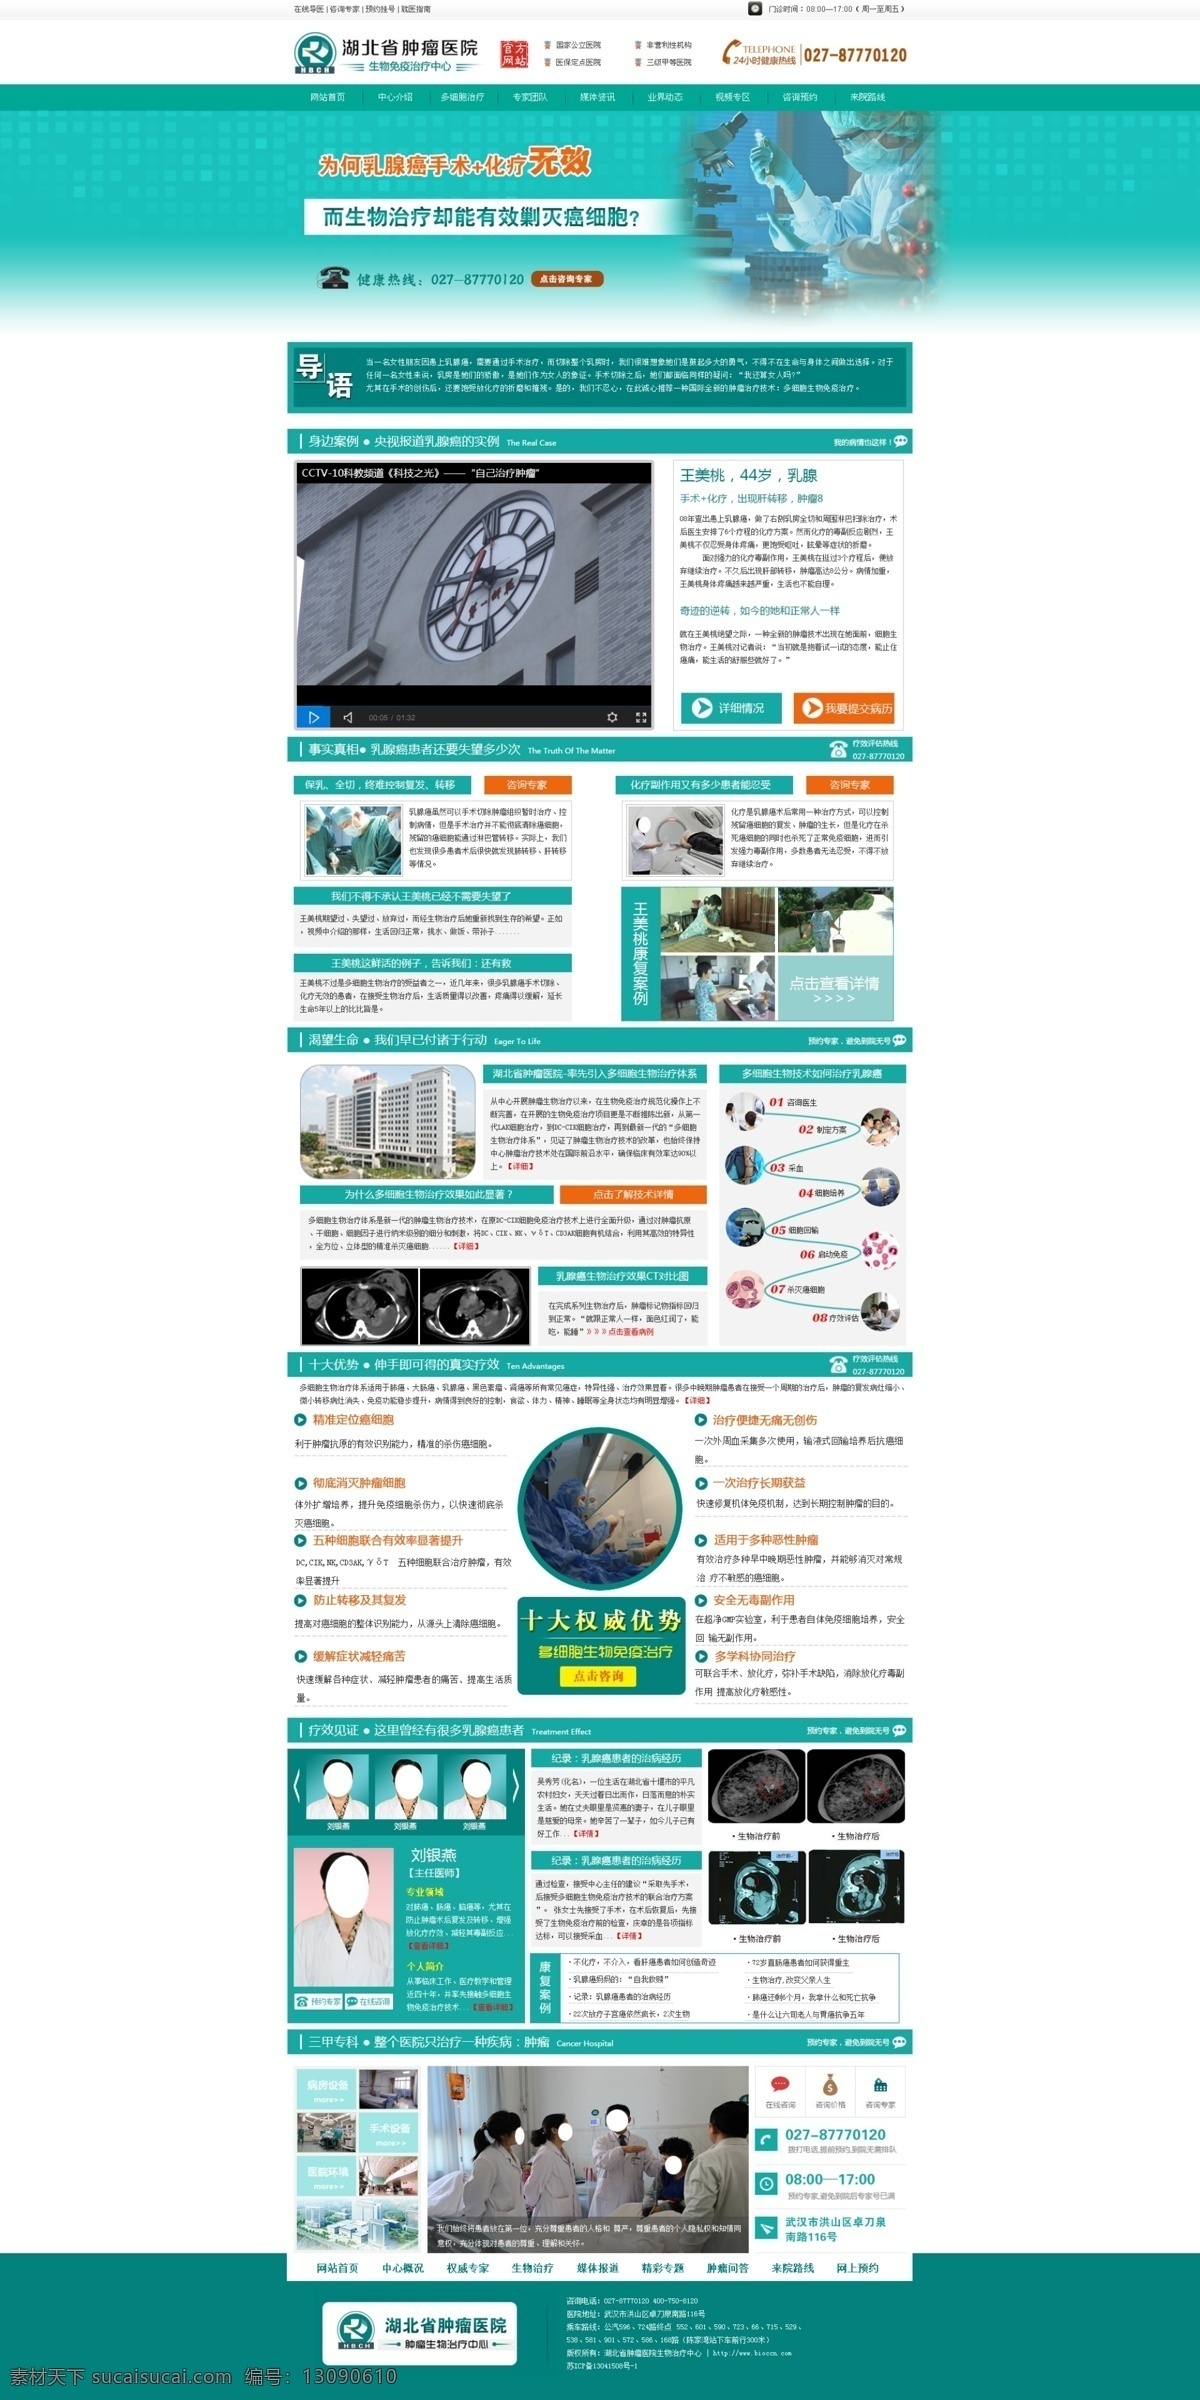 乳腺癌专题 乳腺癌 生物治疗 多细胞 cls 医疗 蓝色 专题 网页 网站 web 界面设计 中文模板